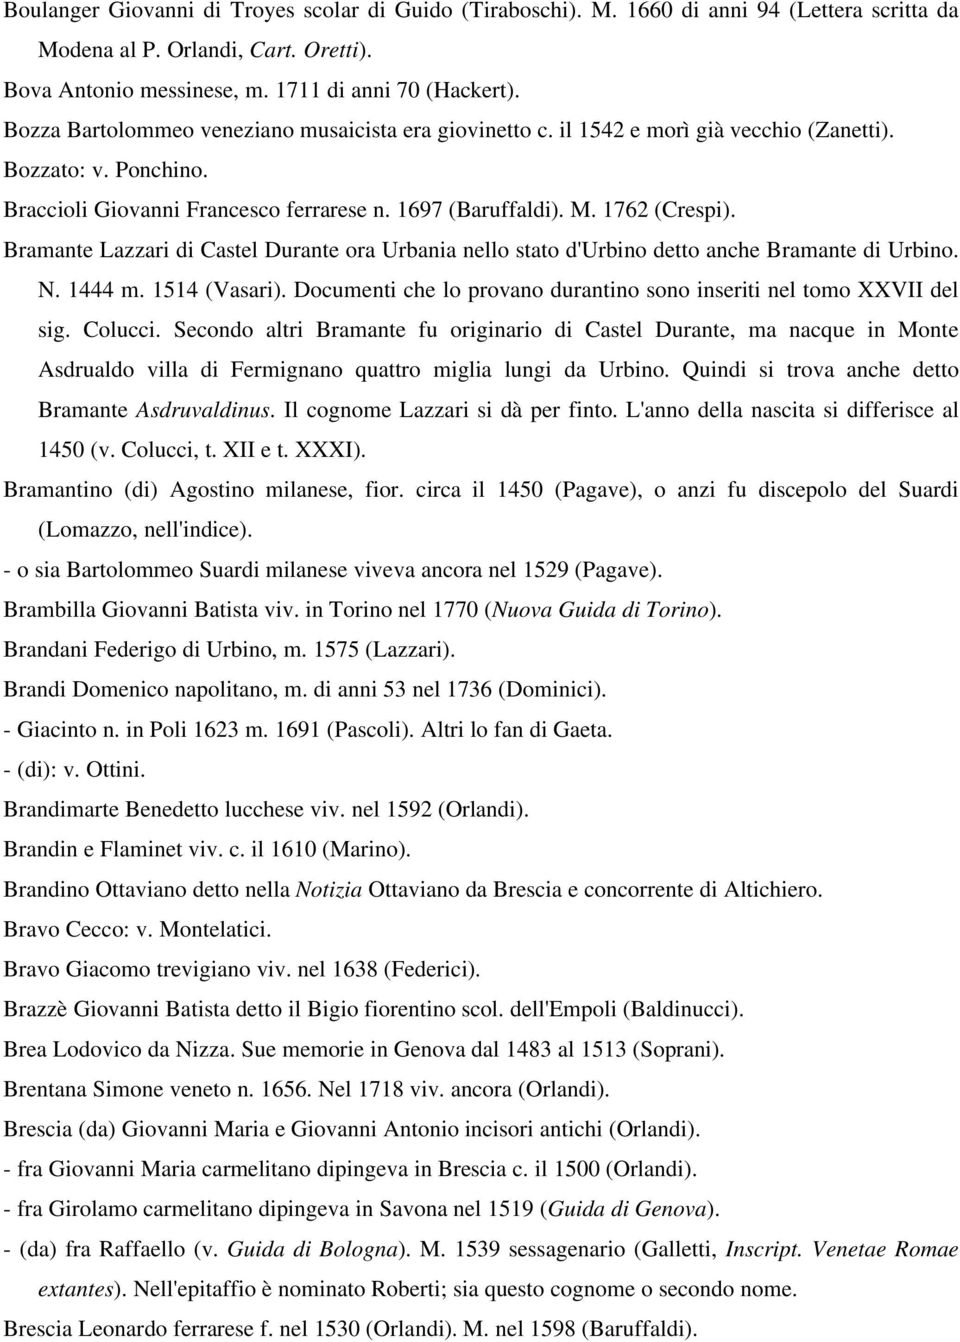 Bramante Lazzari di Castel Durante ora Urbania nello stato d'urbino detto anche Bramante di Urbino. N. 1444 m. 1514 (Vasari). Documenti che lo provano durantino sono inseriti nel tomo XXVII del sig.